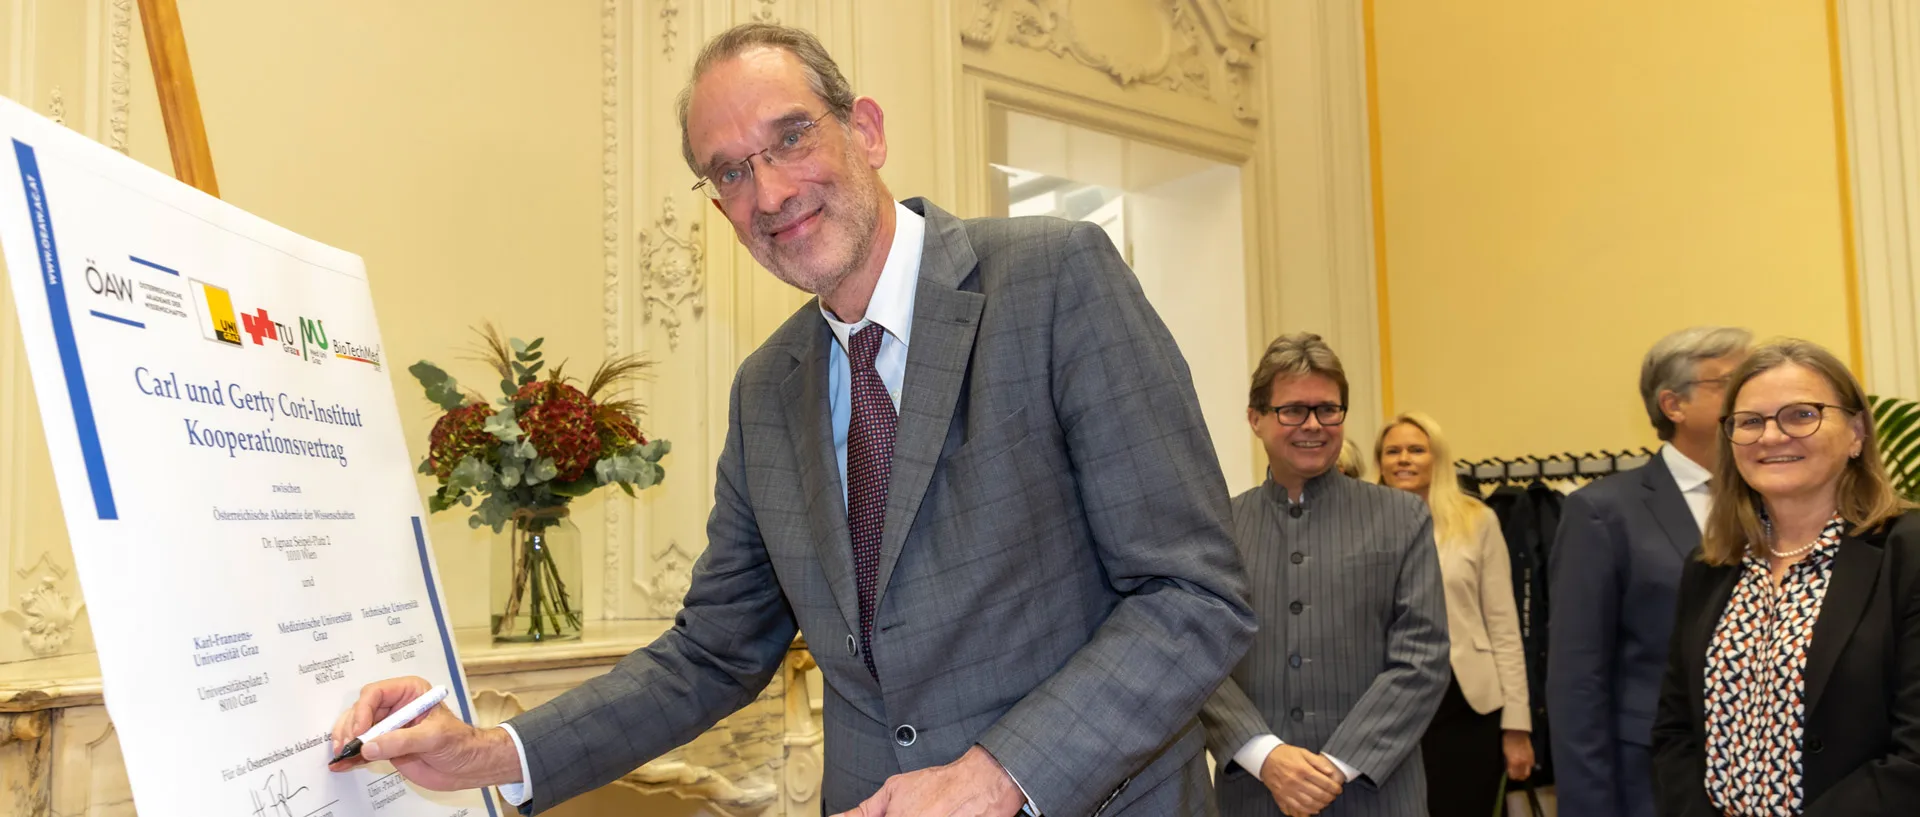 ÖAW-Präsident Heinz Faßmann unterzeichnet ein Poster zur Gründung des Cori-Instituts.